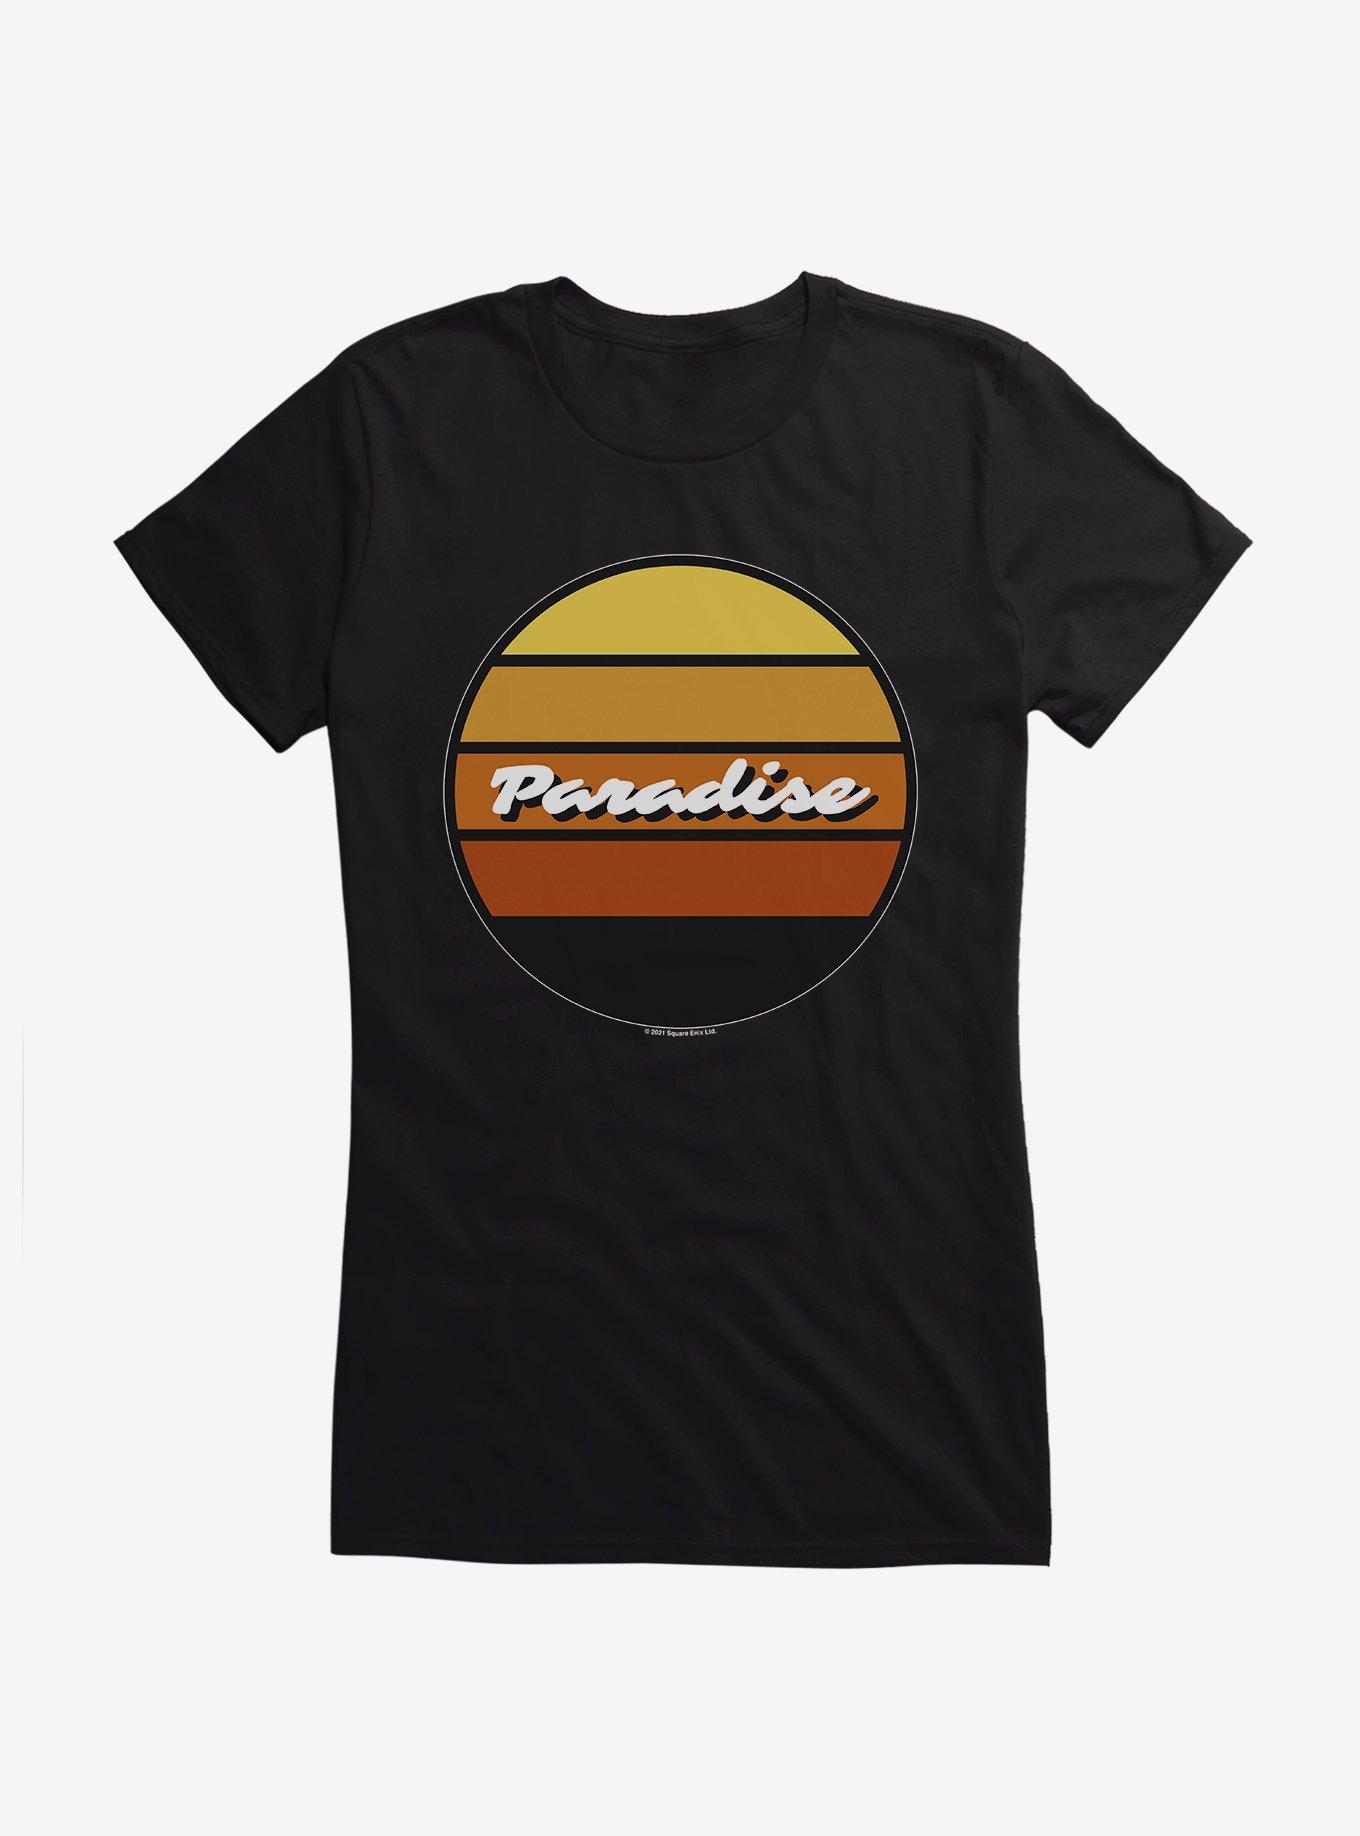 Square Enix Paradise Girls T-Shirt